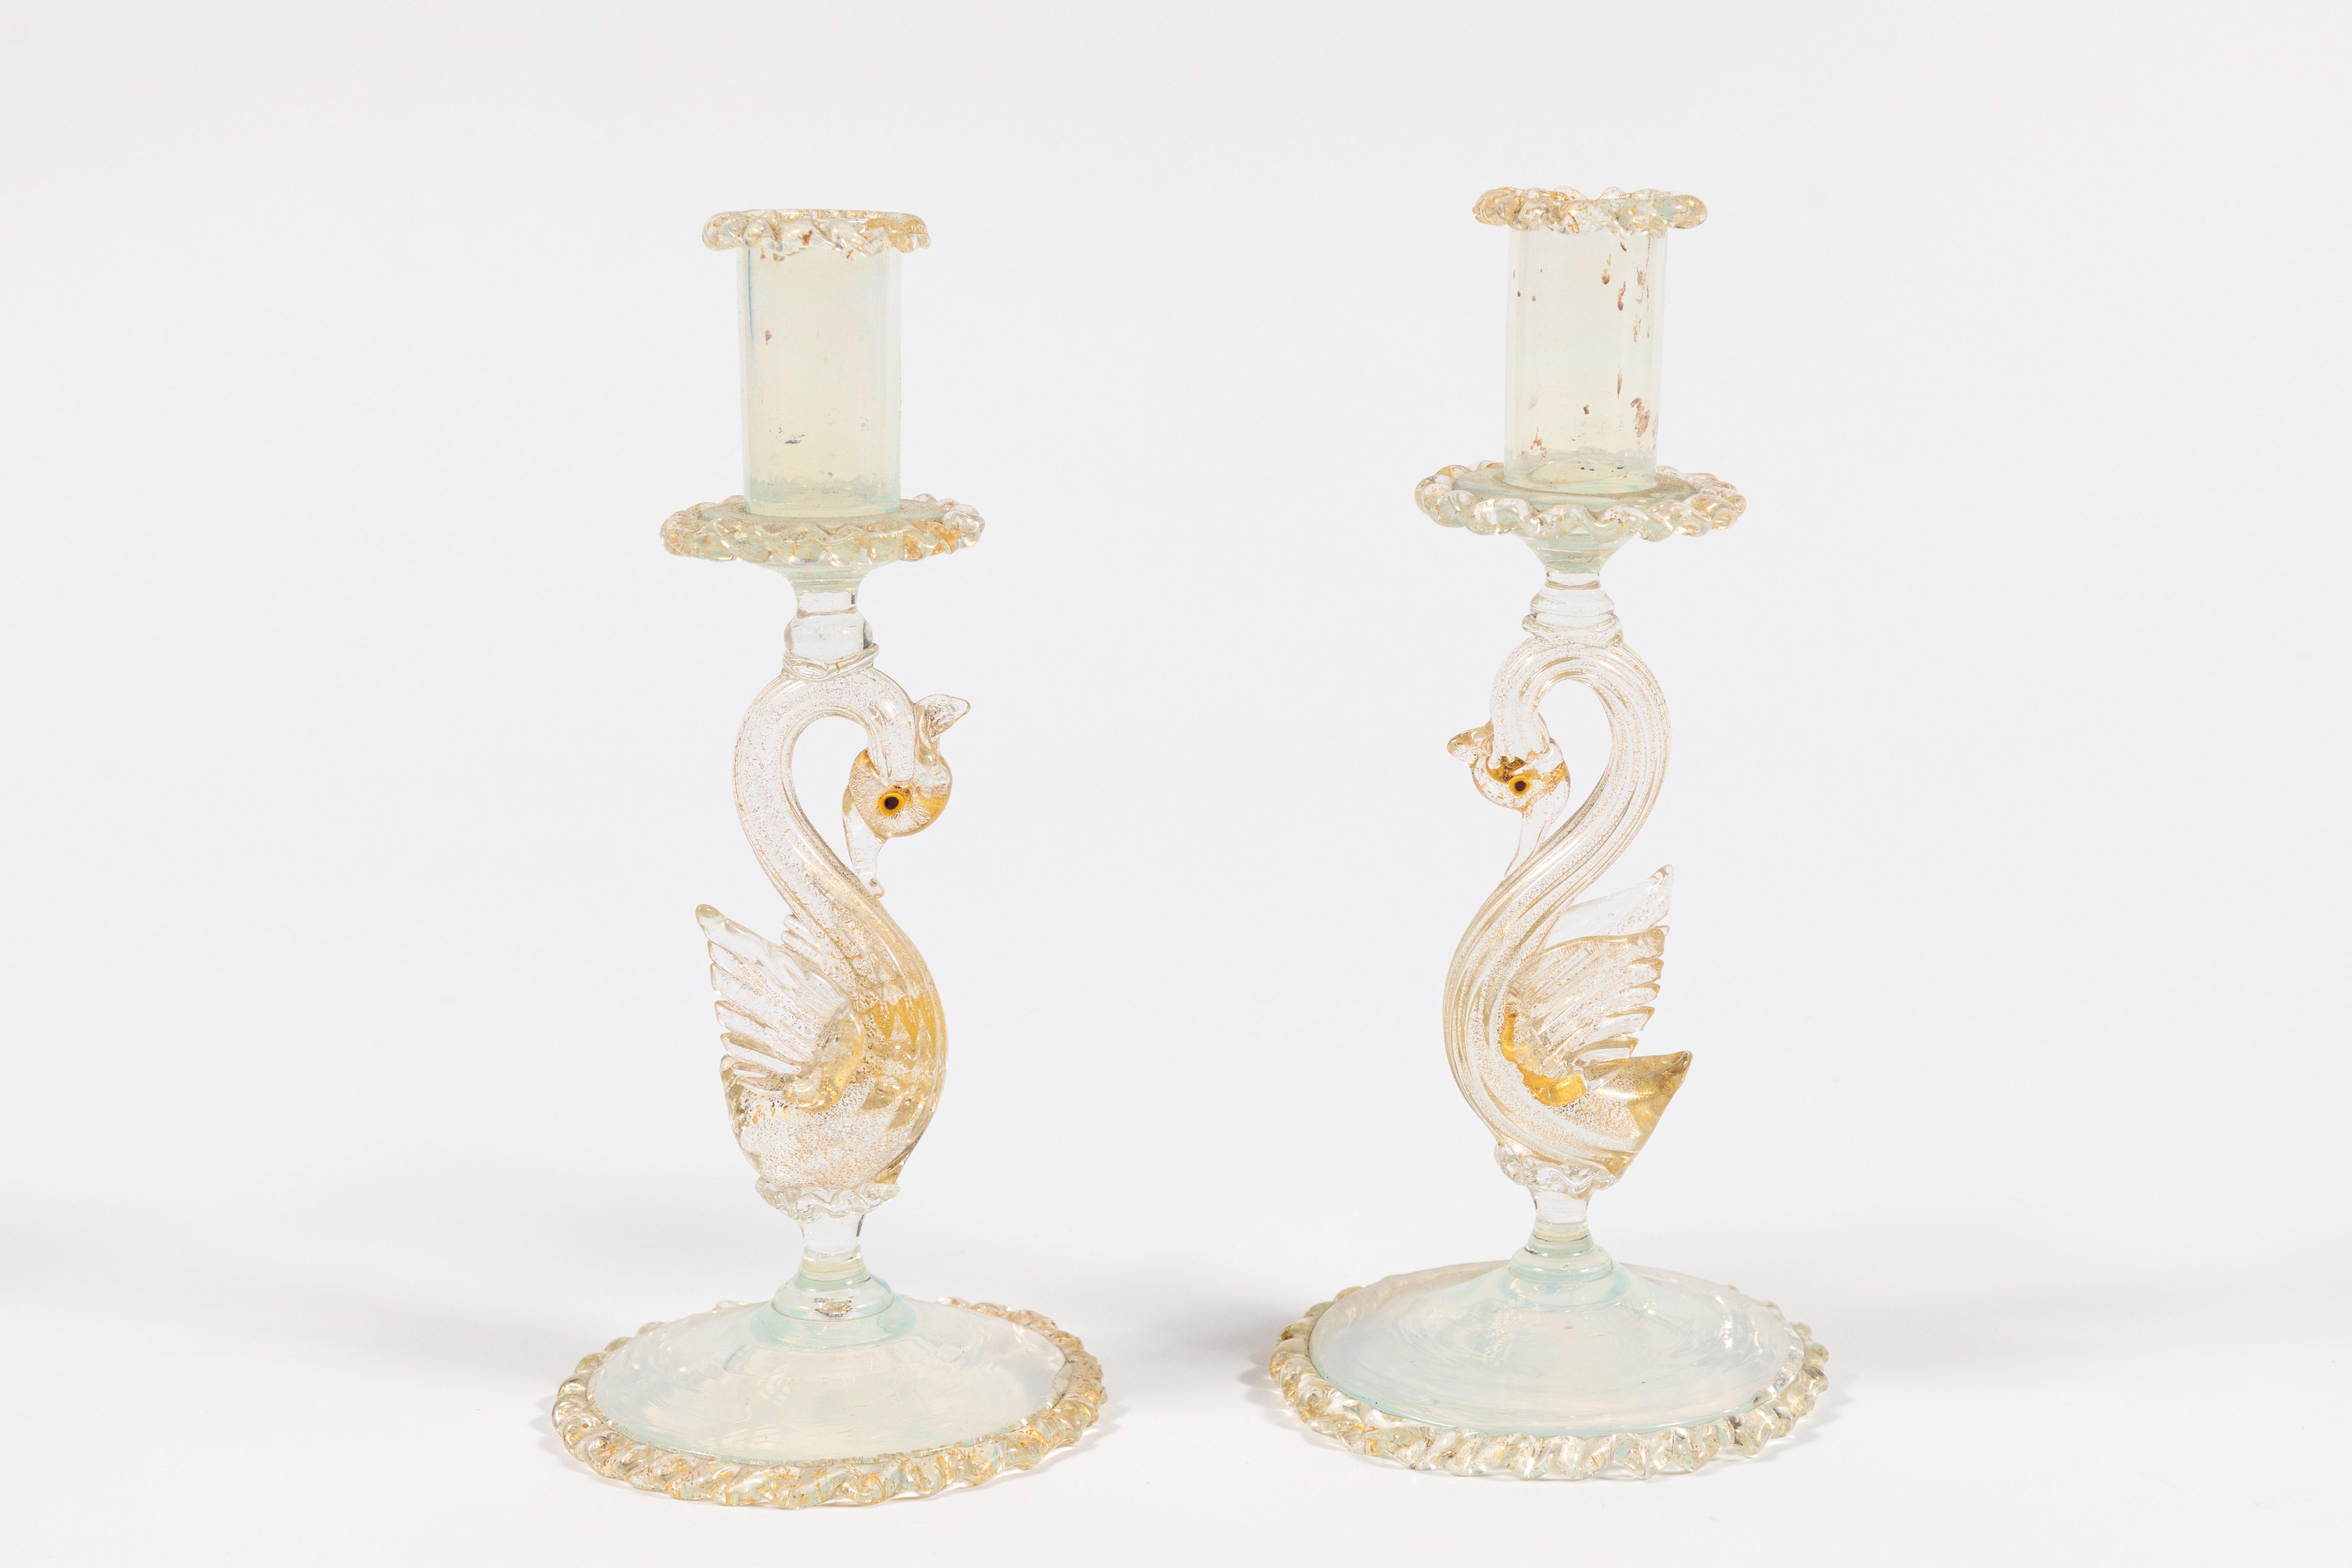 Paar geflügelte Schwan-Kerzenleuchter.  Viele Goldflecken und Opalglas.  Mit der Hand geblasen.  Italienisch.  Neuwertiger Zustand.